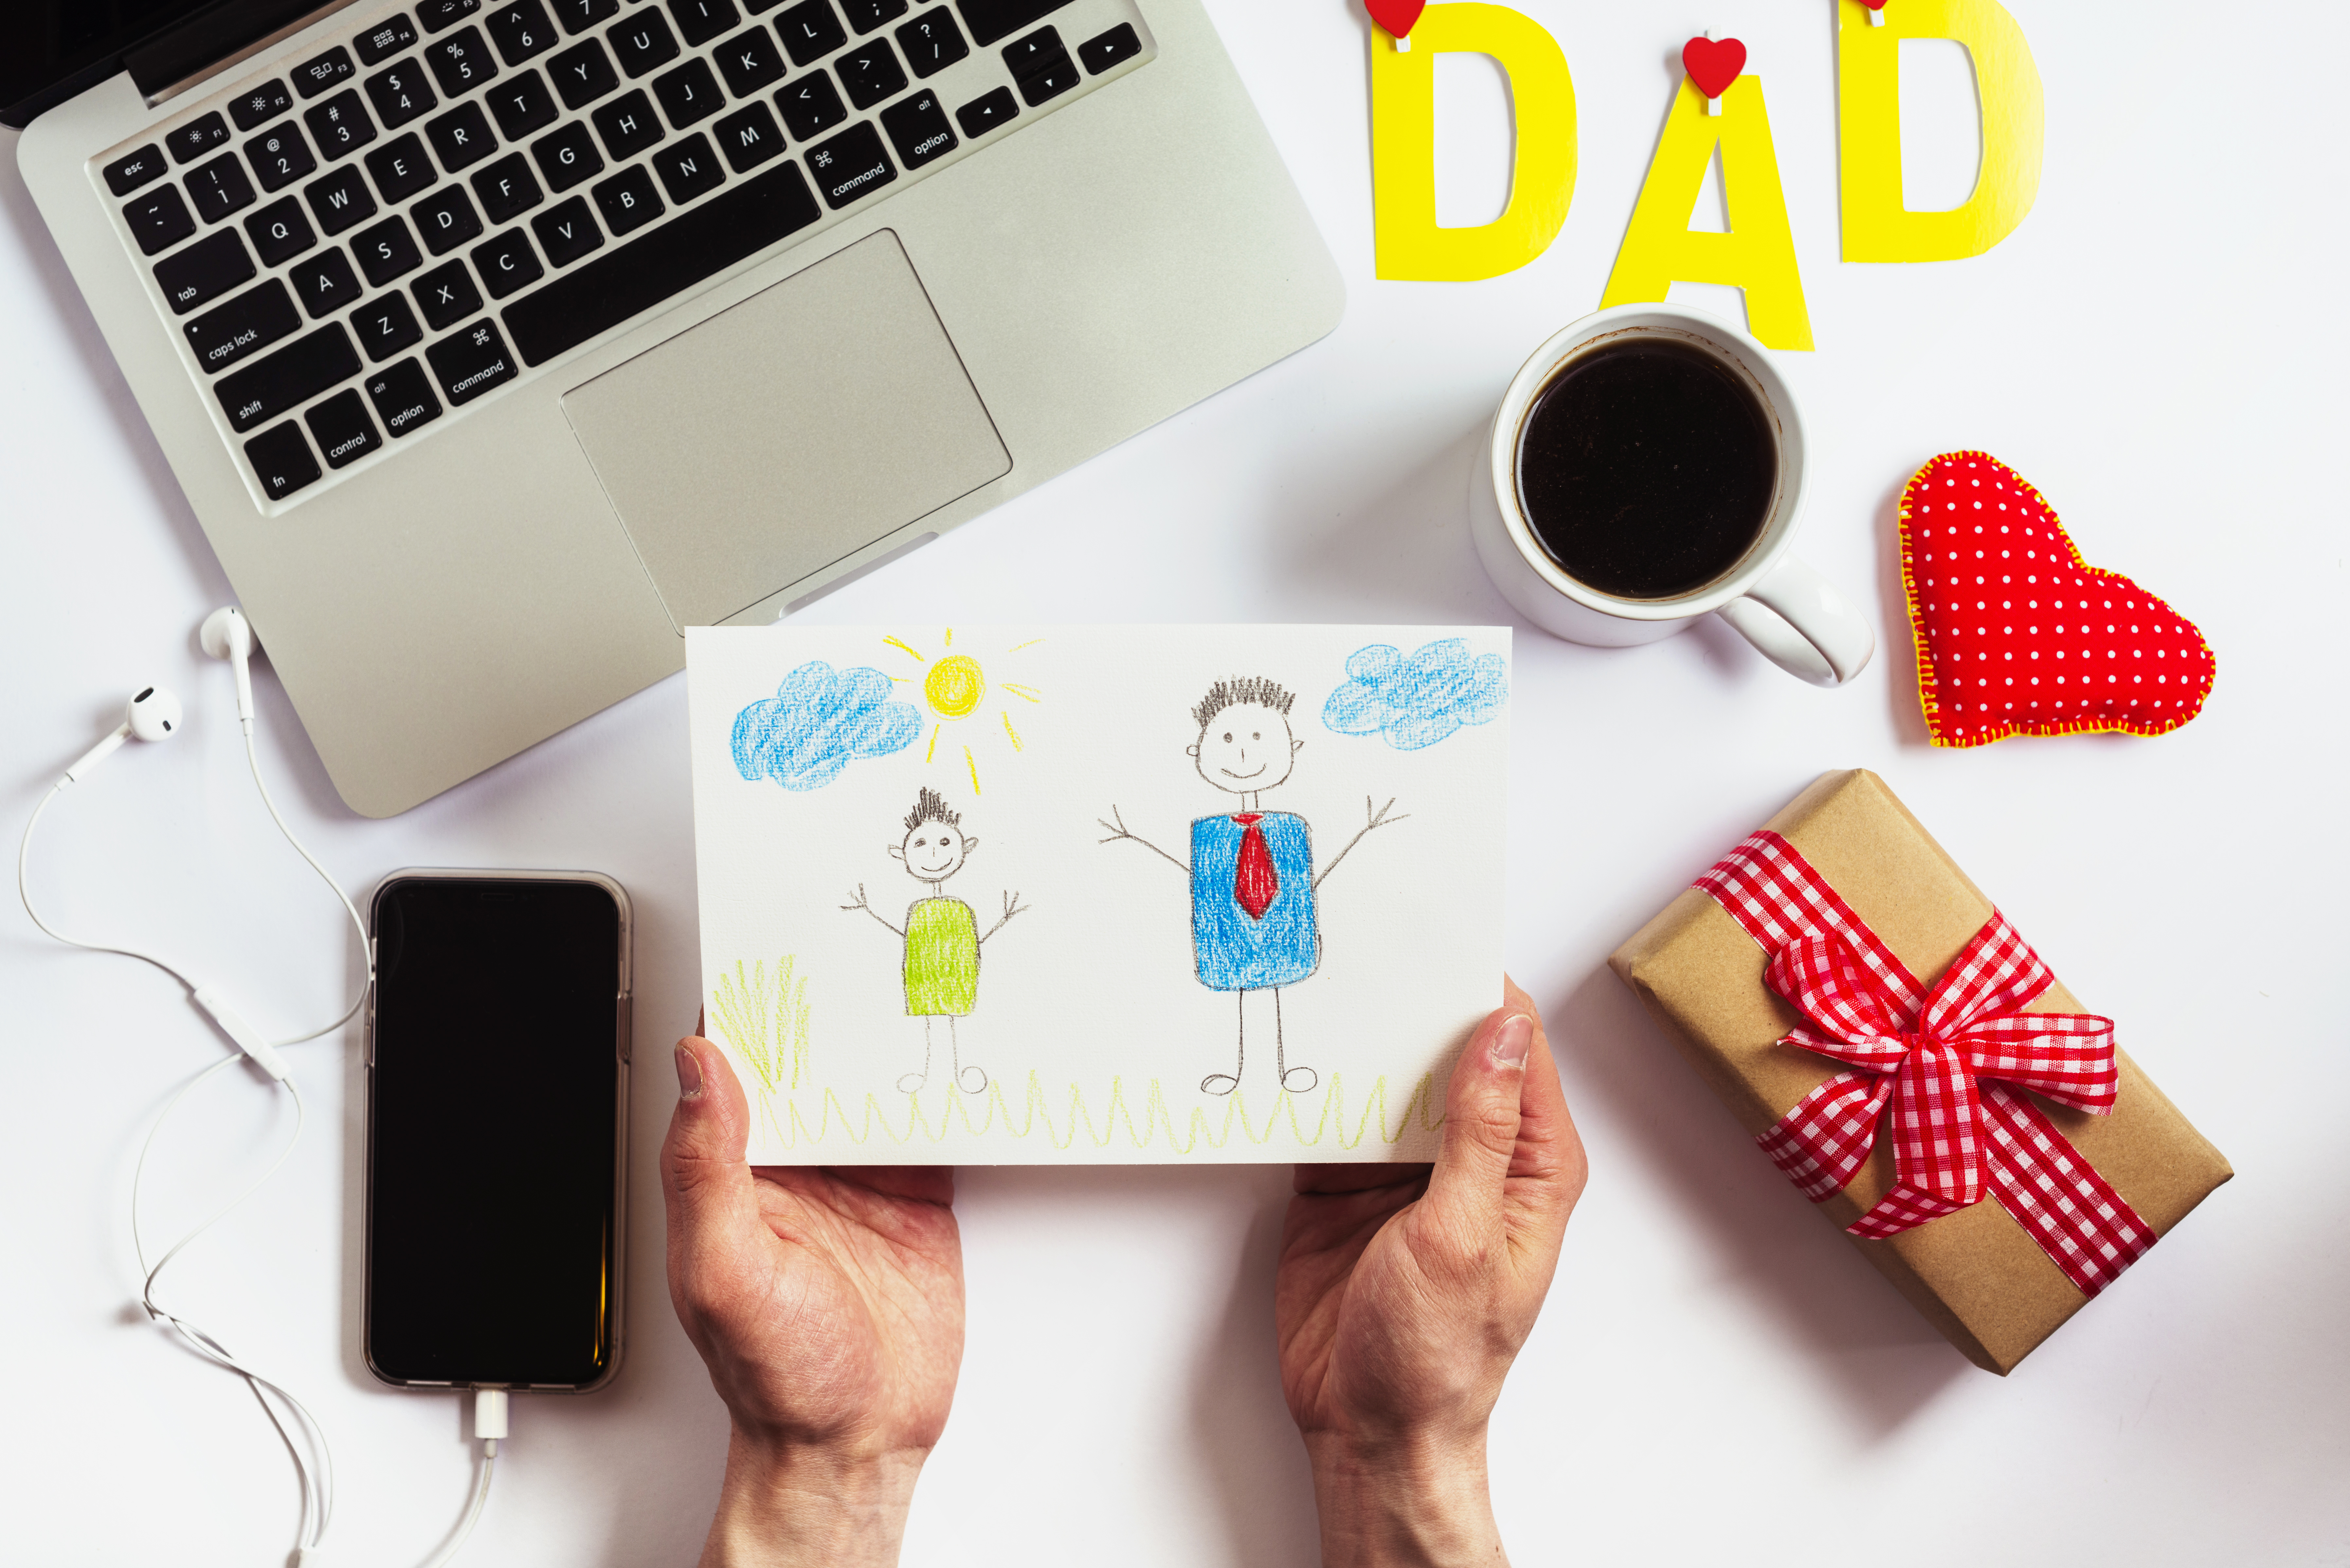 Para el Día del Padre próximo, los dispositivos tecnológicos son una buena opción de regalo. (Foto Prensa Libre: ilustración Freepik)